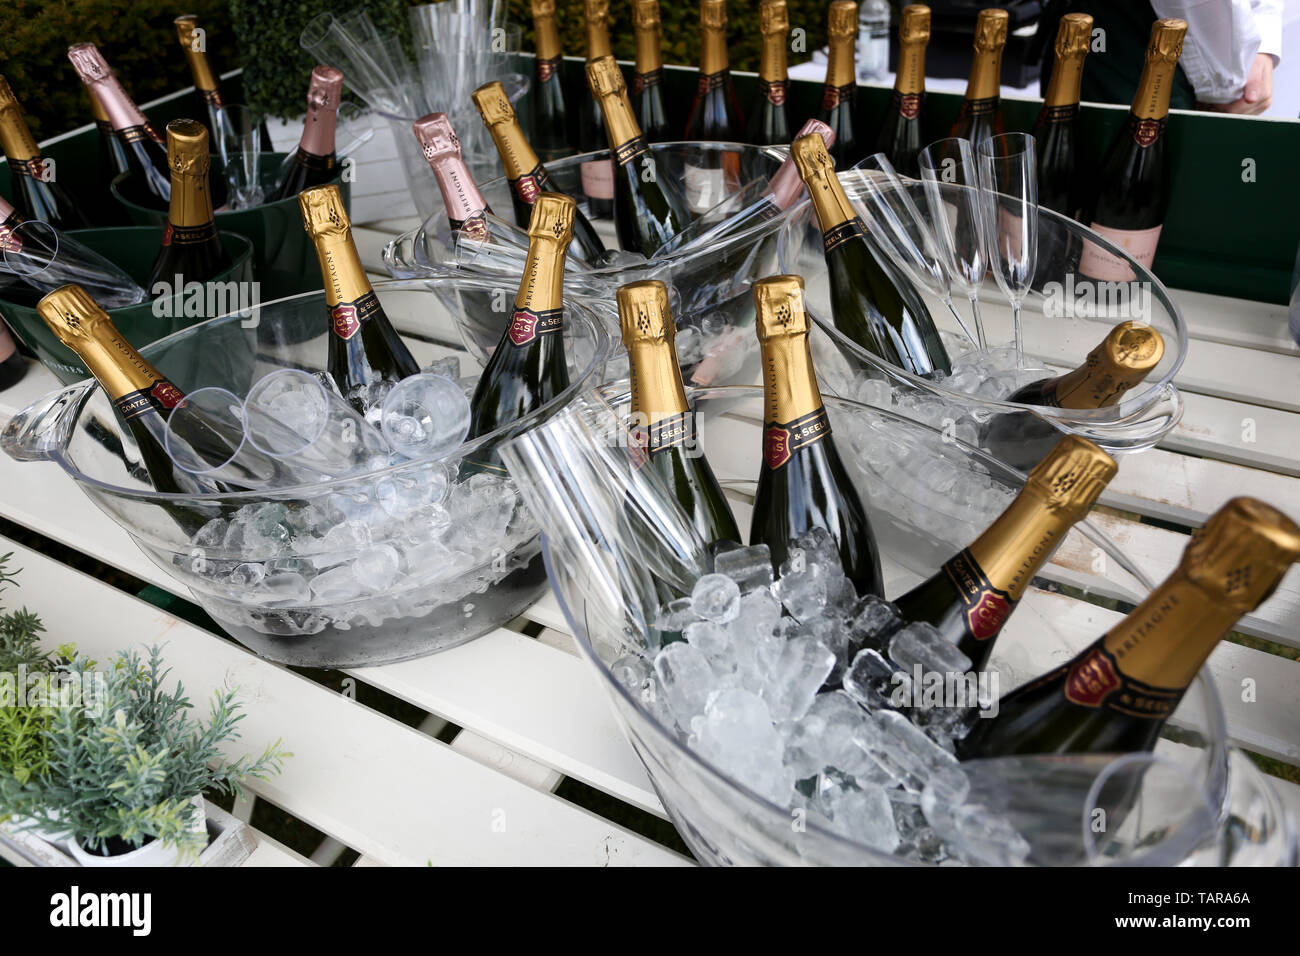 Allgemeine Ansichten von Flaschen mit Coates und Seely Champagner auf Eis in Goodwood Pferderennbahn, Chichester, West Sussex, UK. Stockfoto